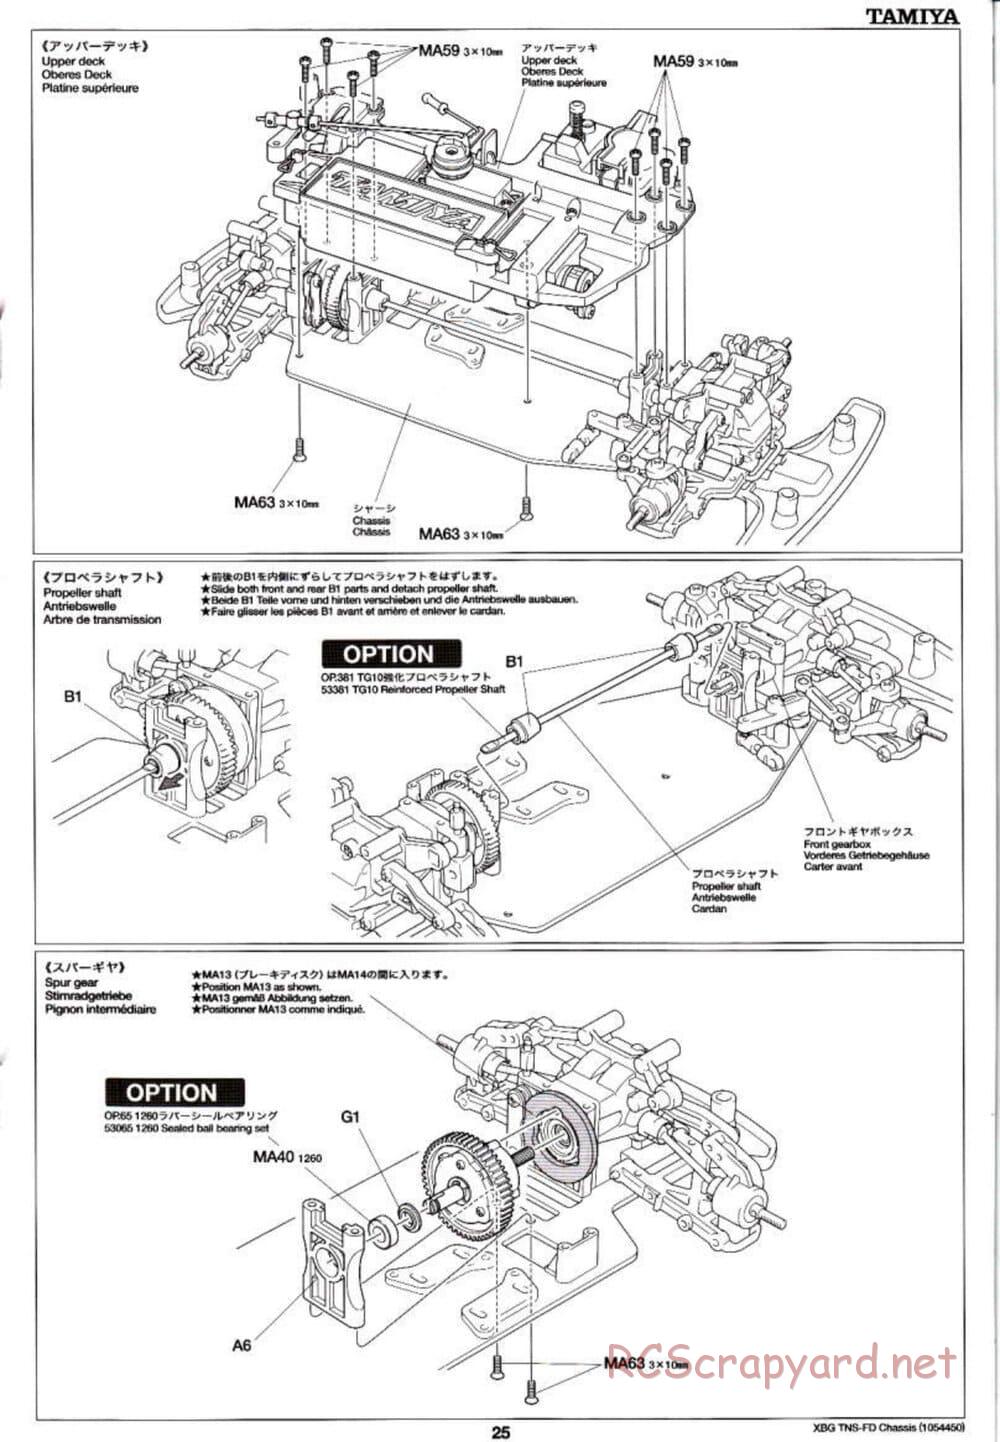 Tamiya - TNS-FD Chassis - Manual - Page 25